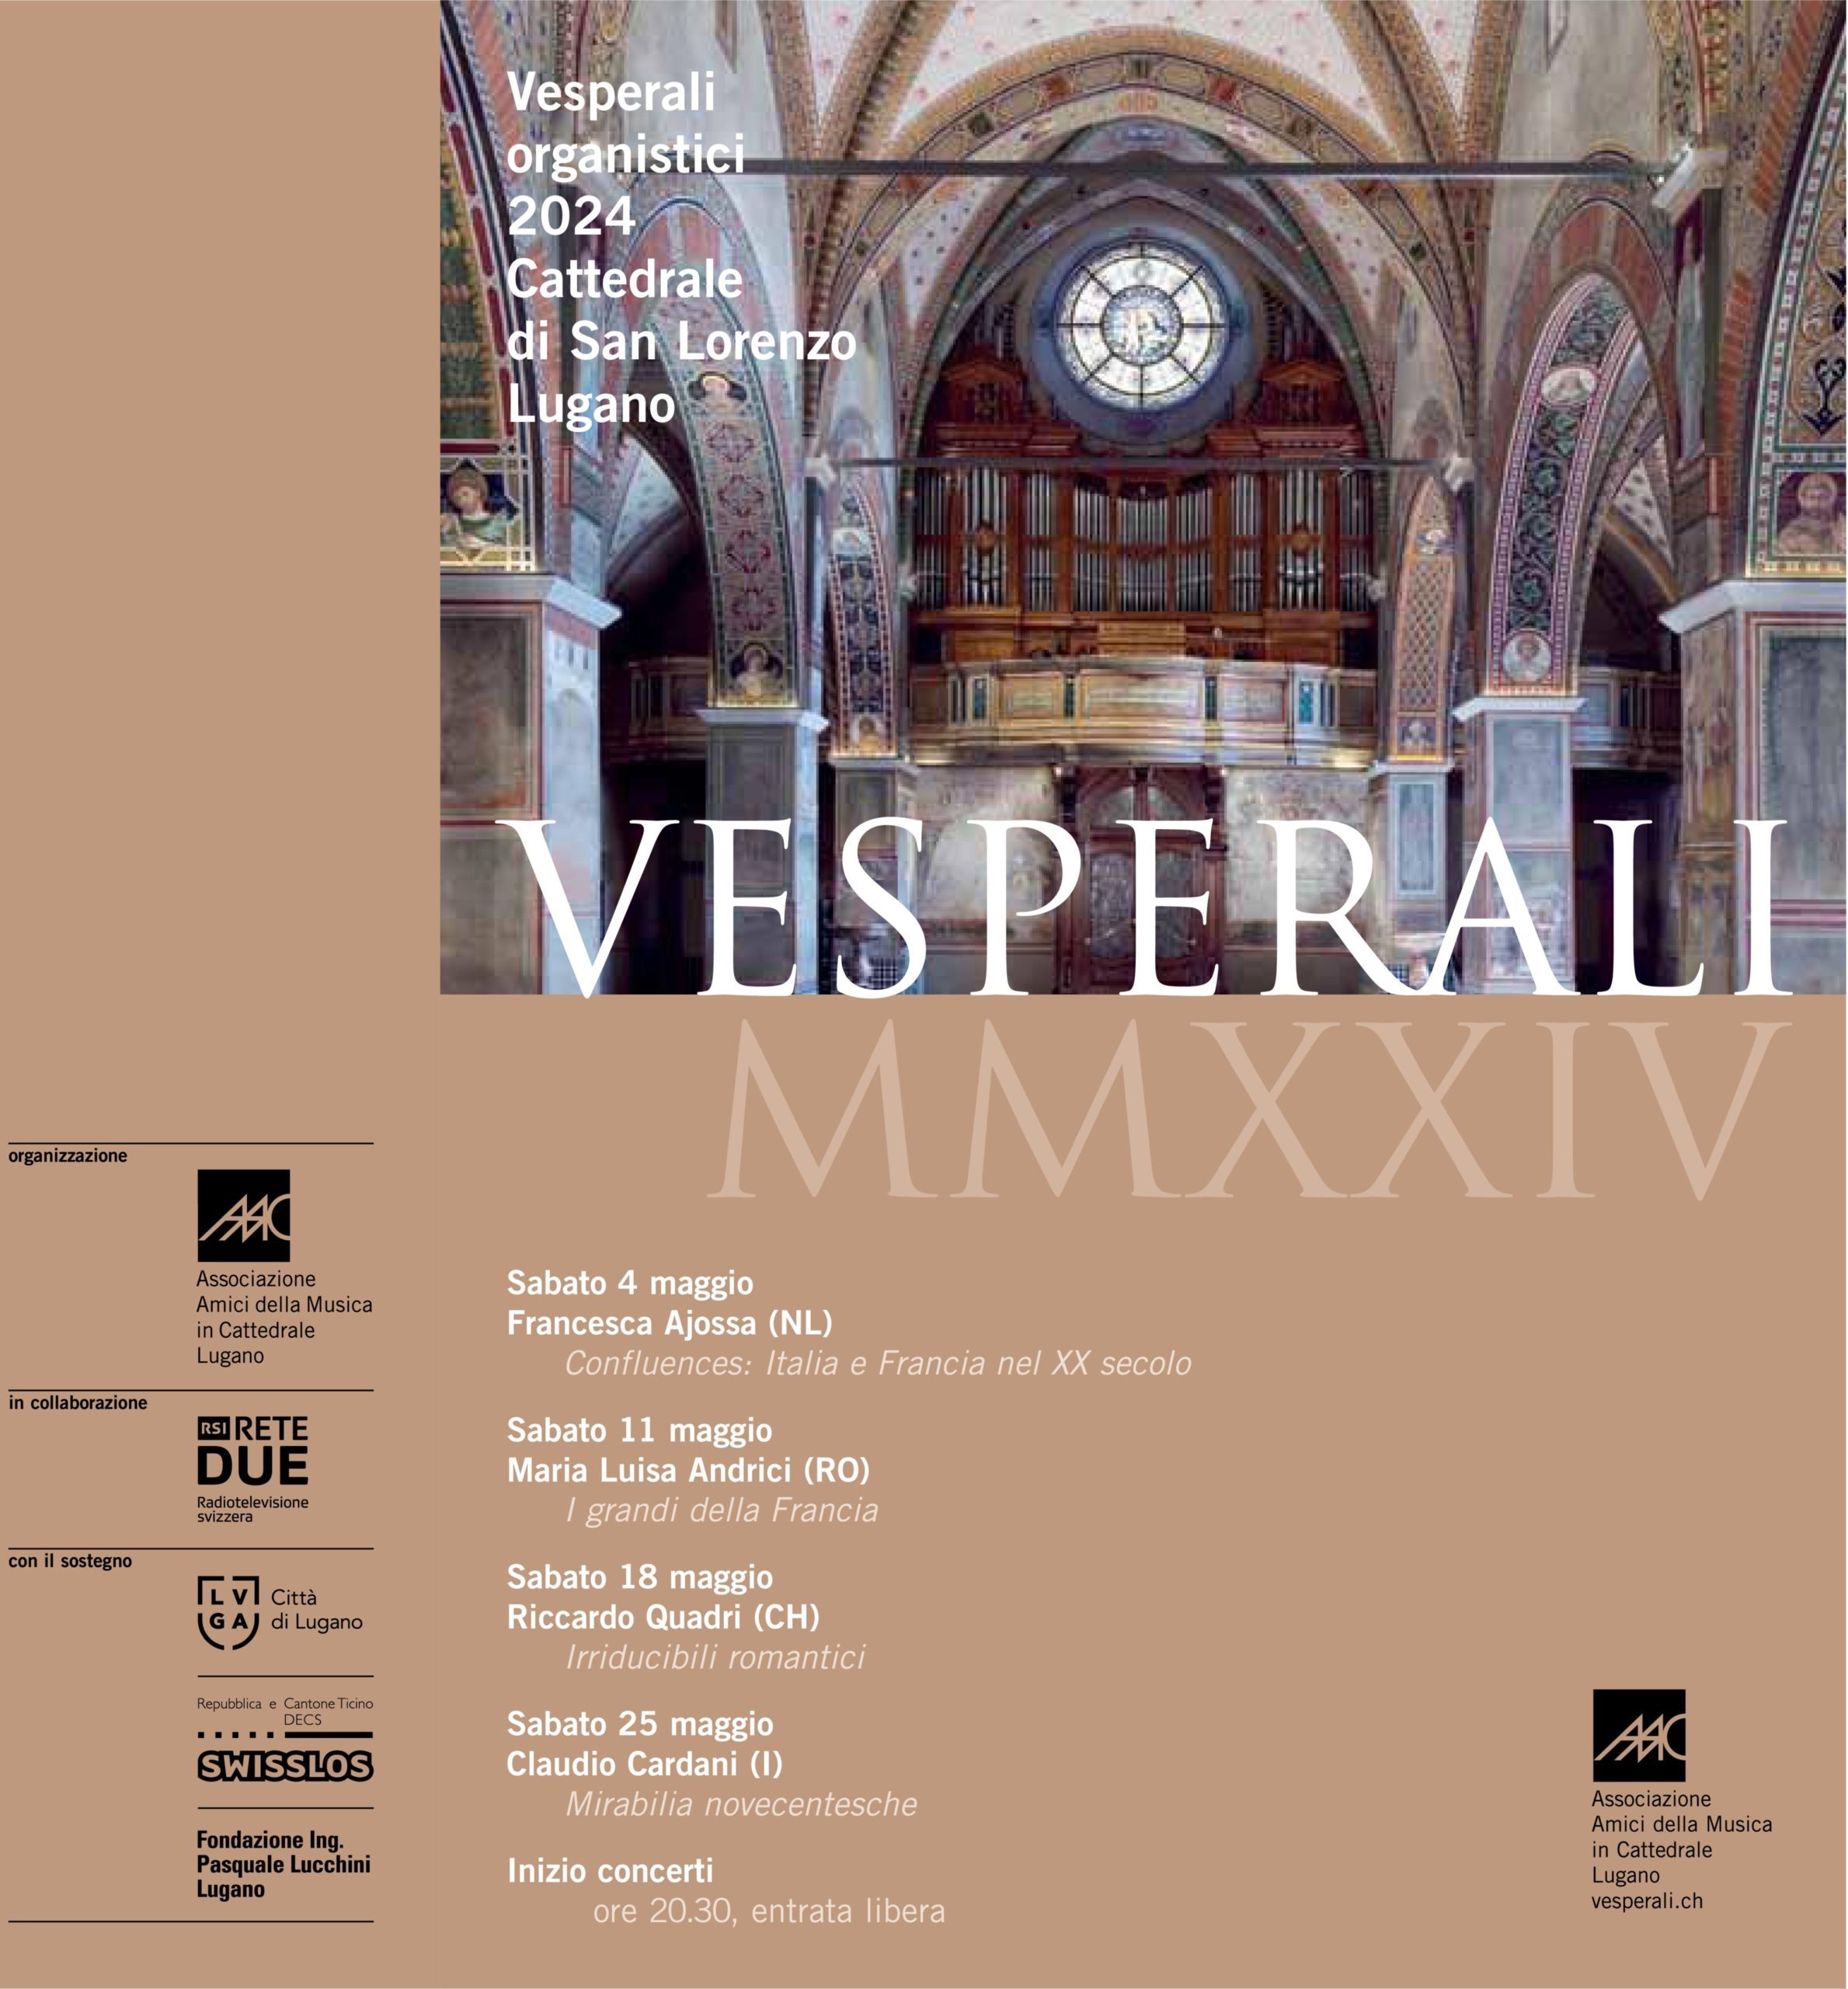 Vesperali organistici in Cattedrale